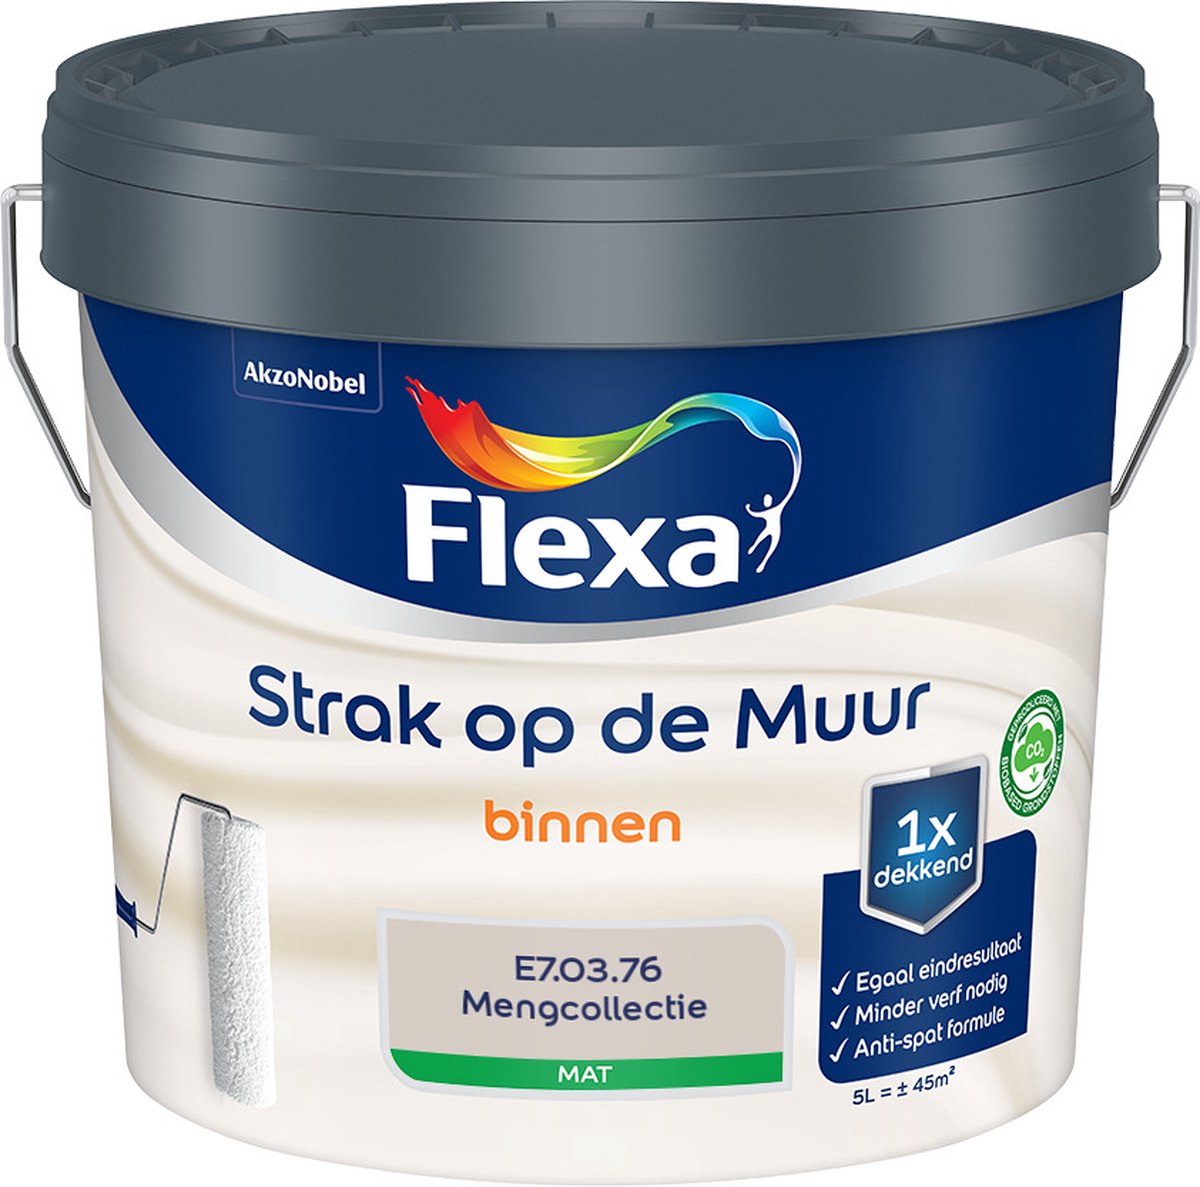 Flexa Strak op de muur - Muurverf - Mengcollectie - E7.03.76 - 5 Liter